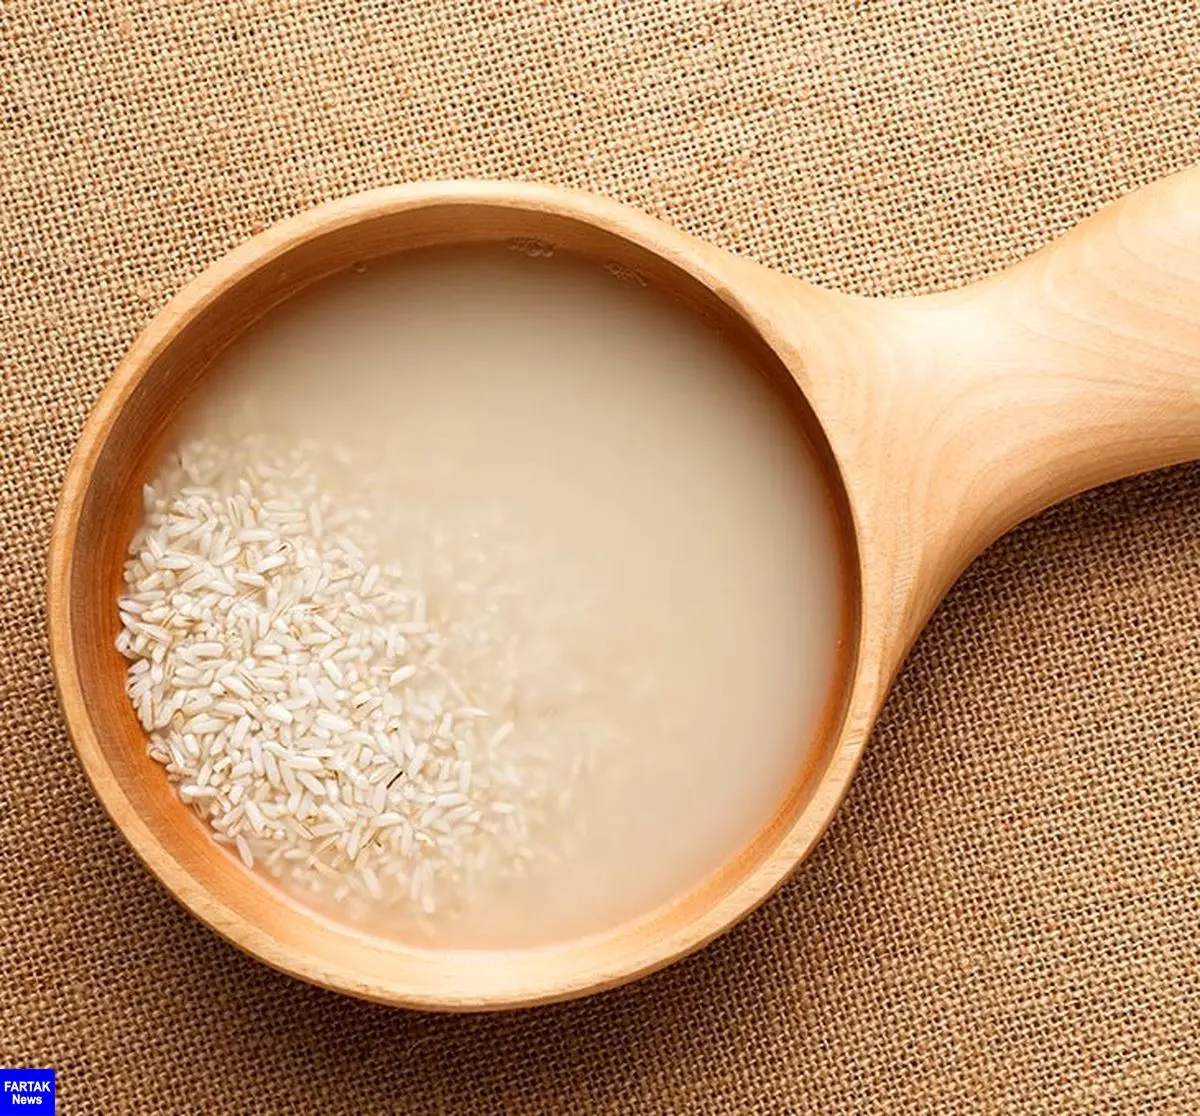 
شستن پوست صورت با آب برنج مفید است؟
